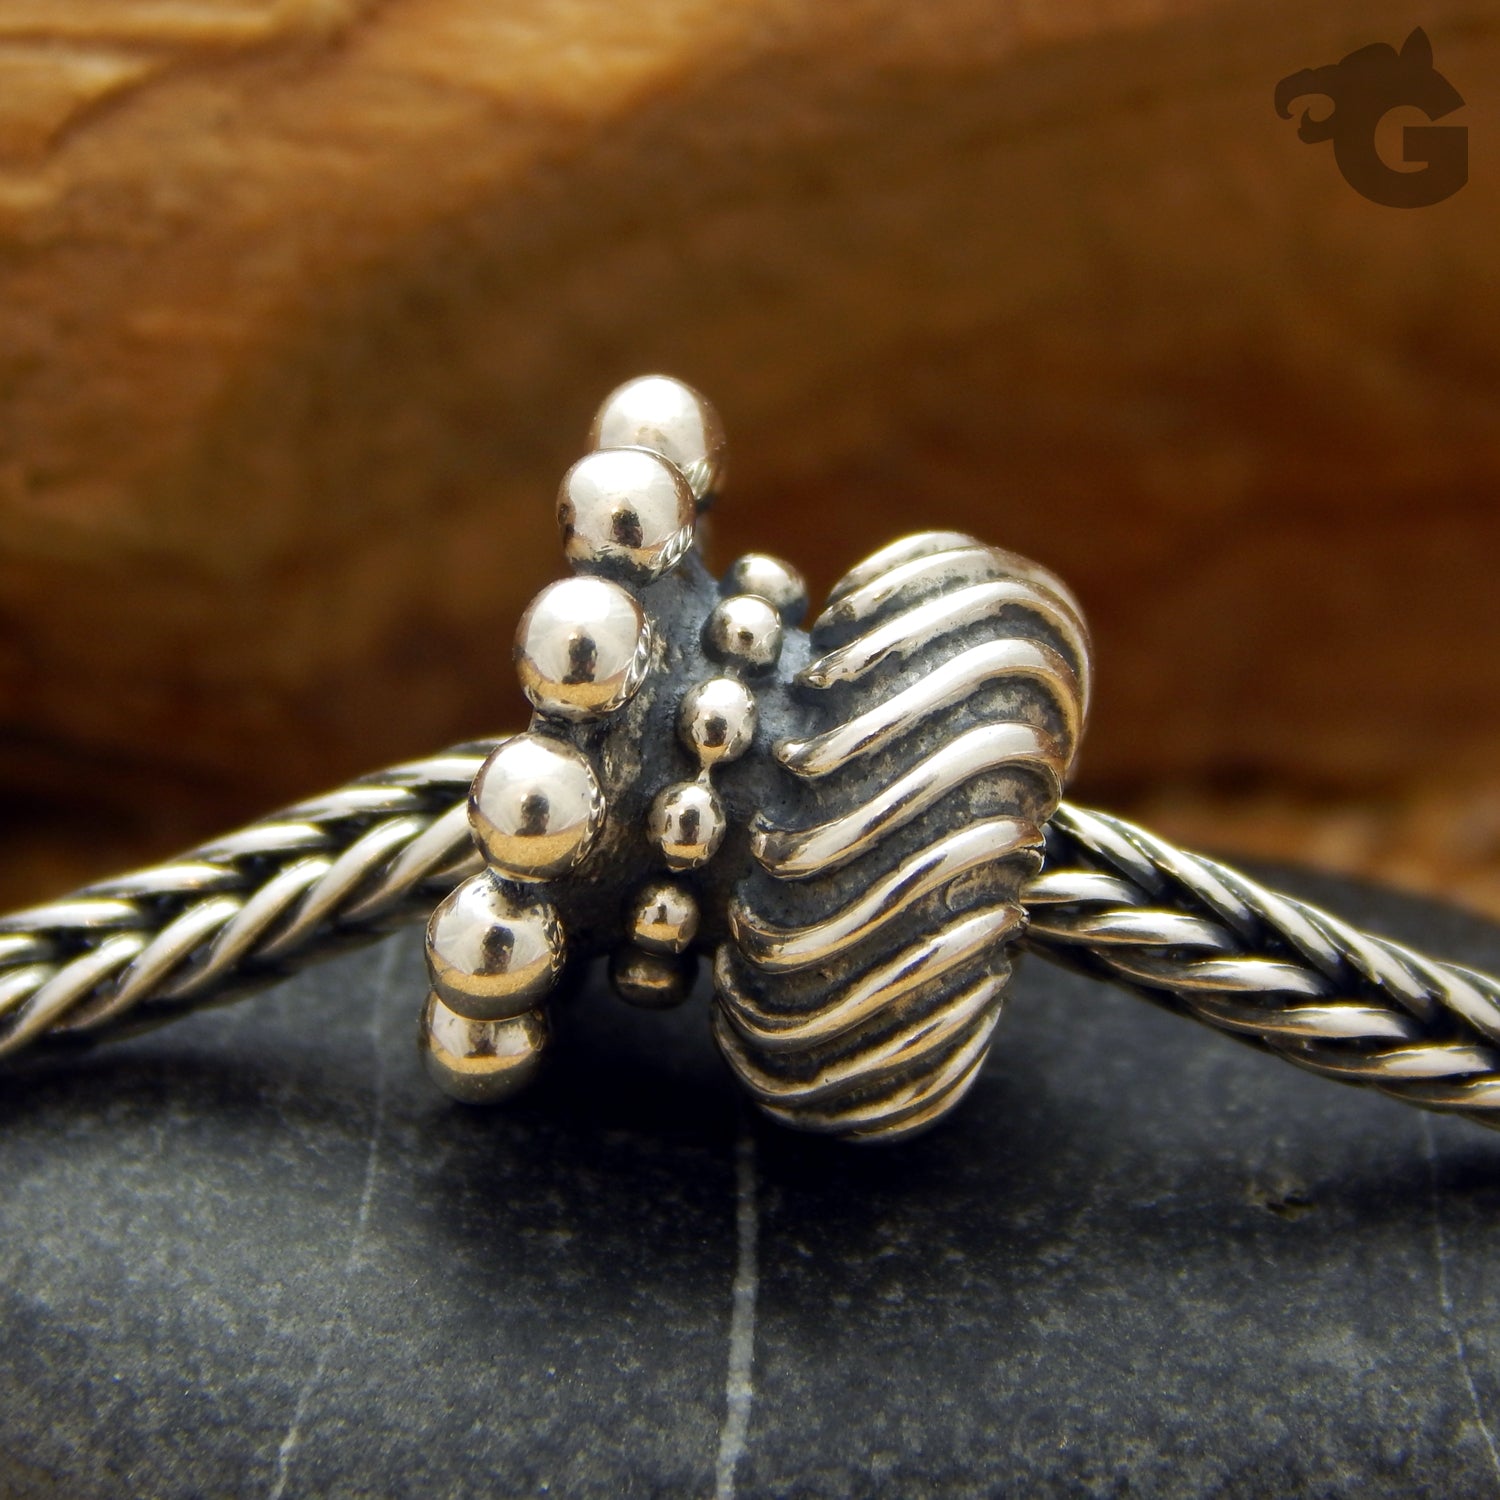 Bracelet stopper beads - Glermes.com